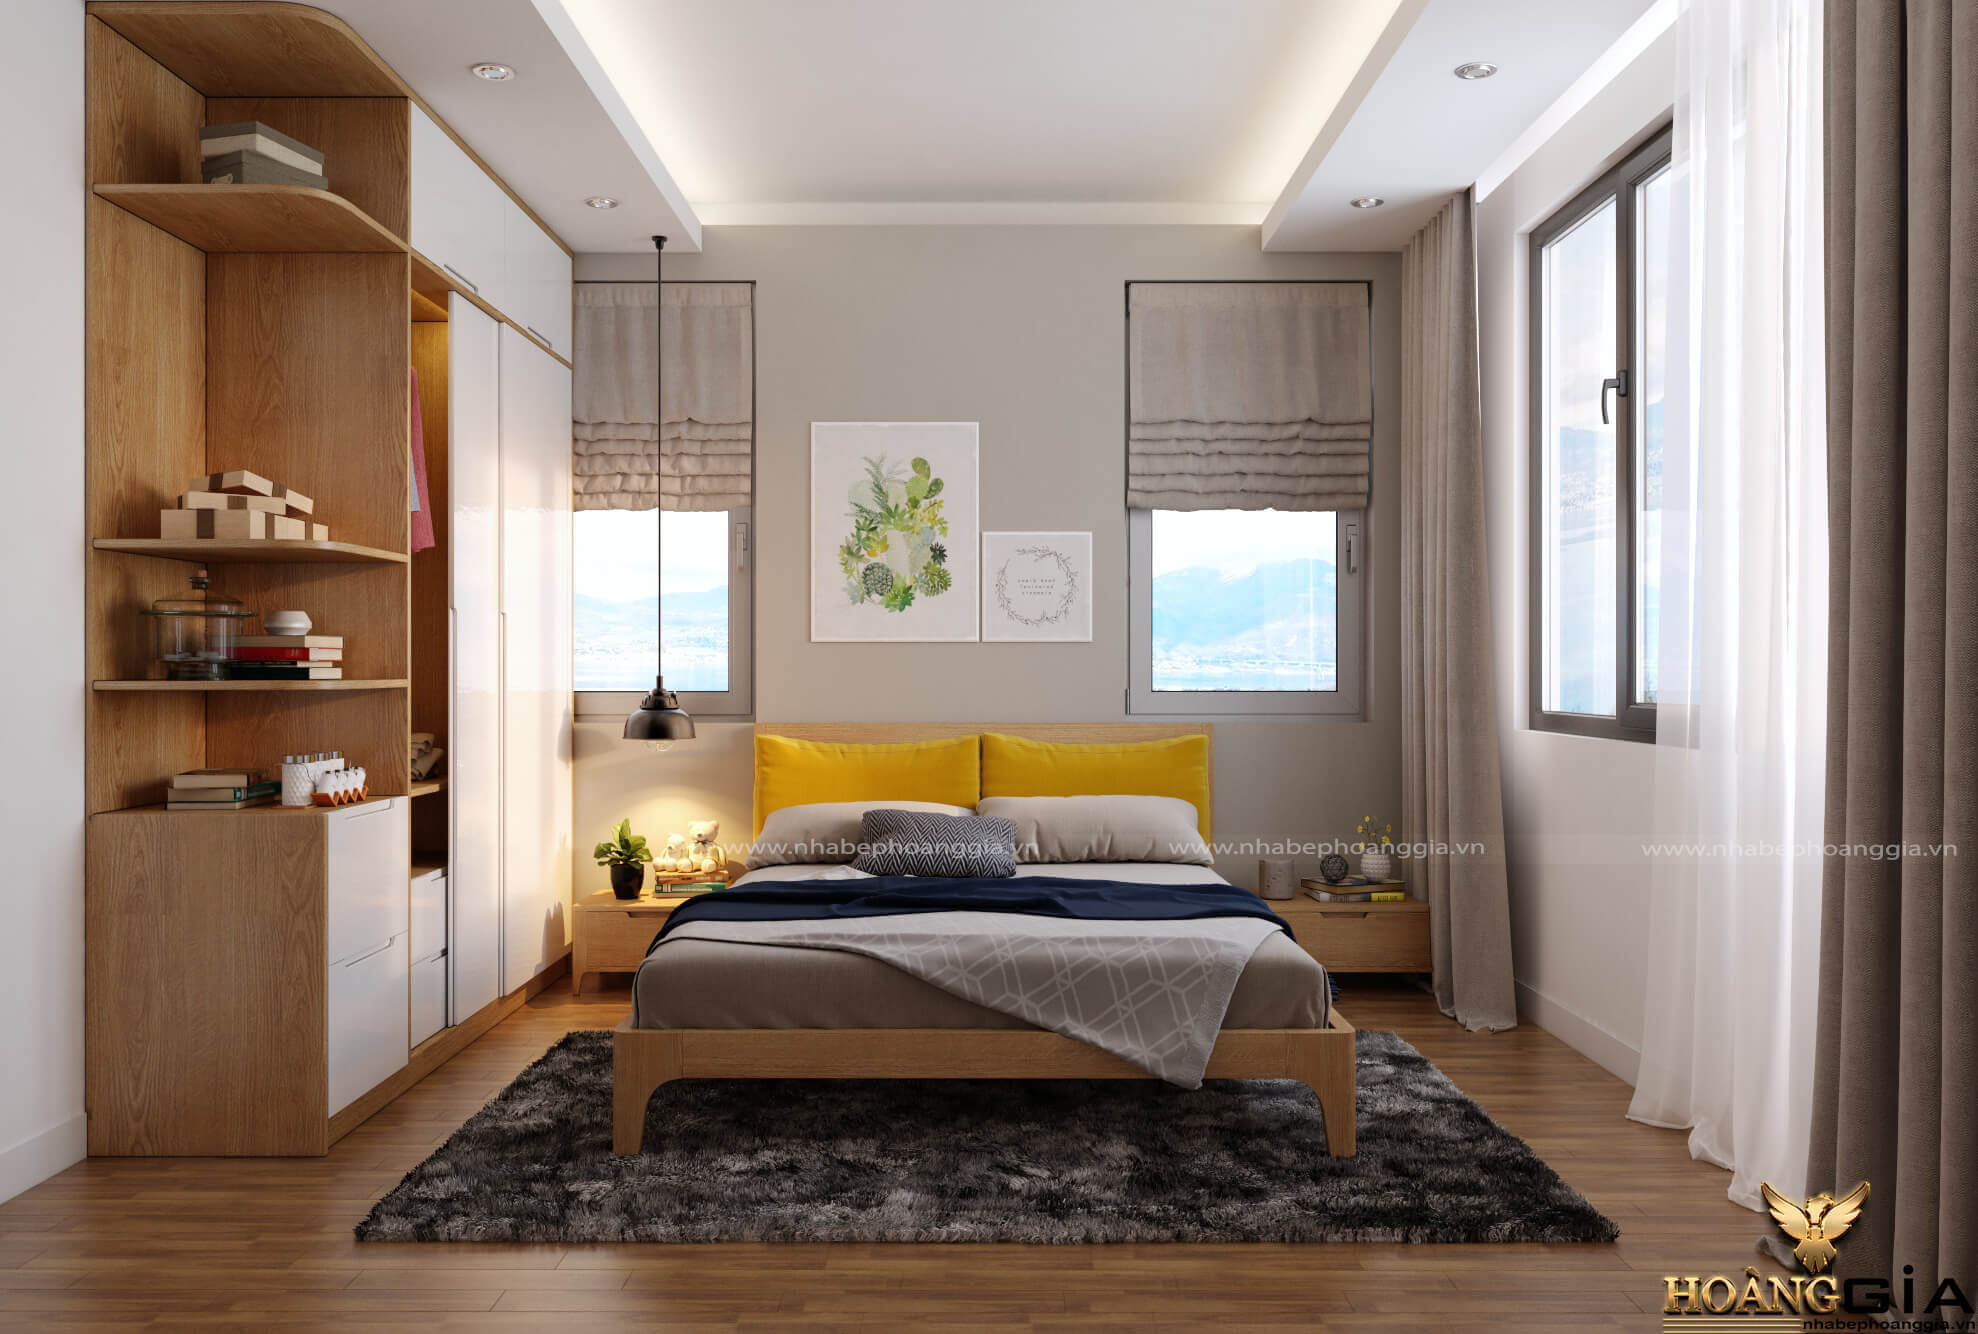 Top 10 mẫu giường ngủ gỗ sồi mỹ đẹp 2019